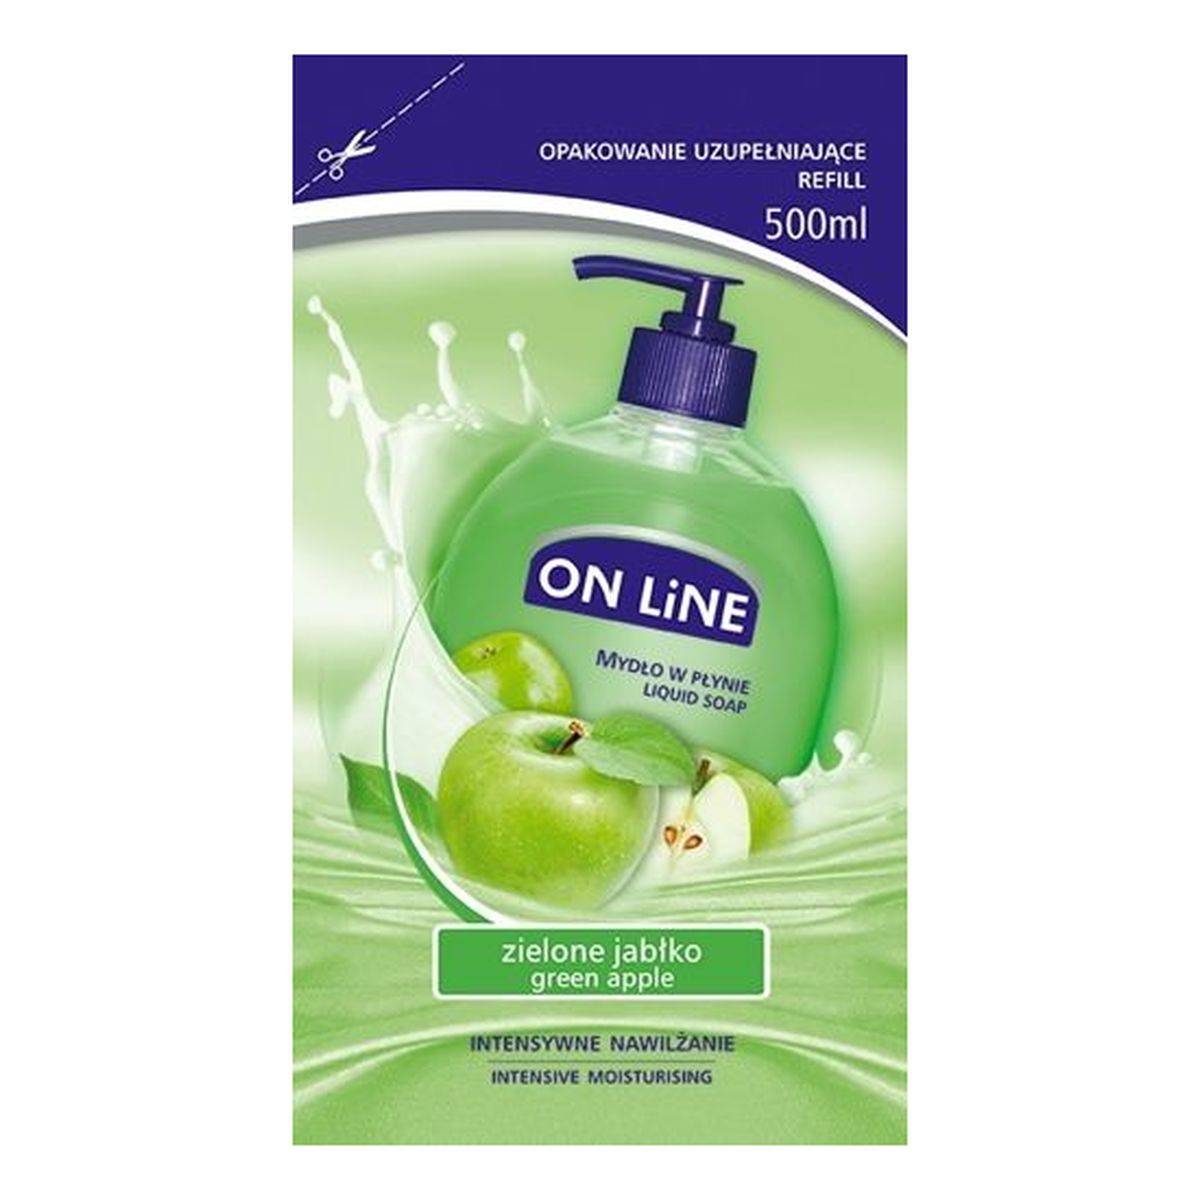 On Line mydło w płynie uzupełnienie zielone Jabłko 500ml